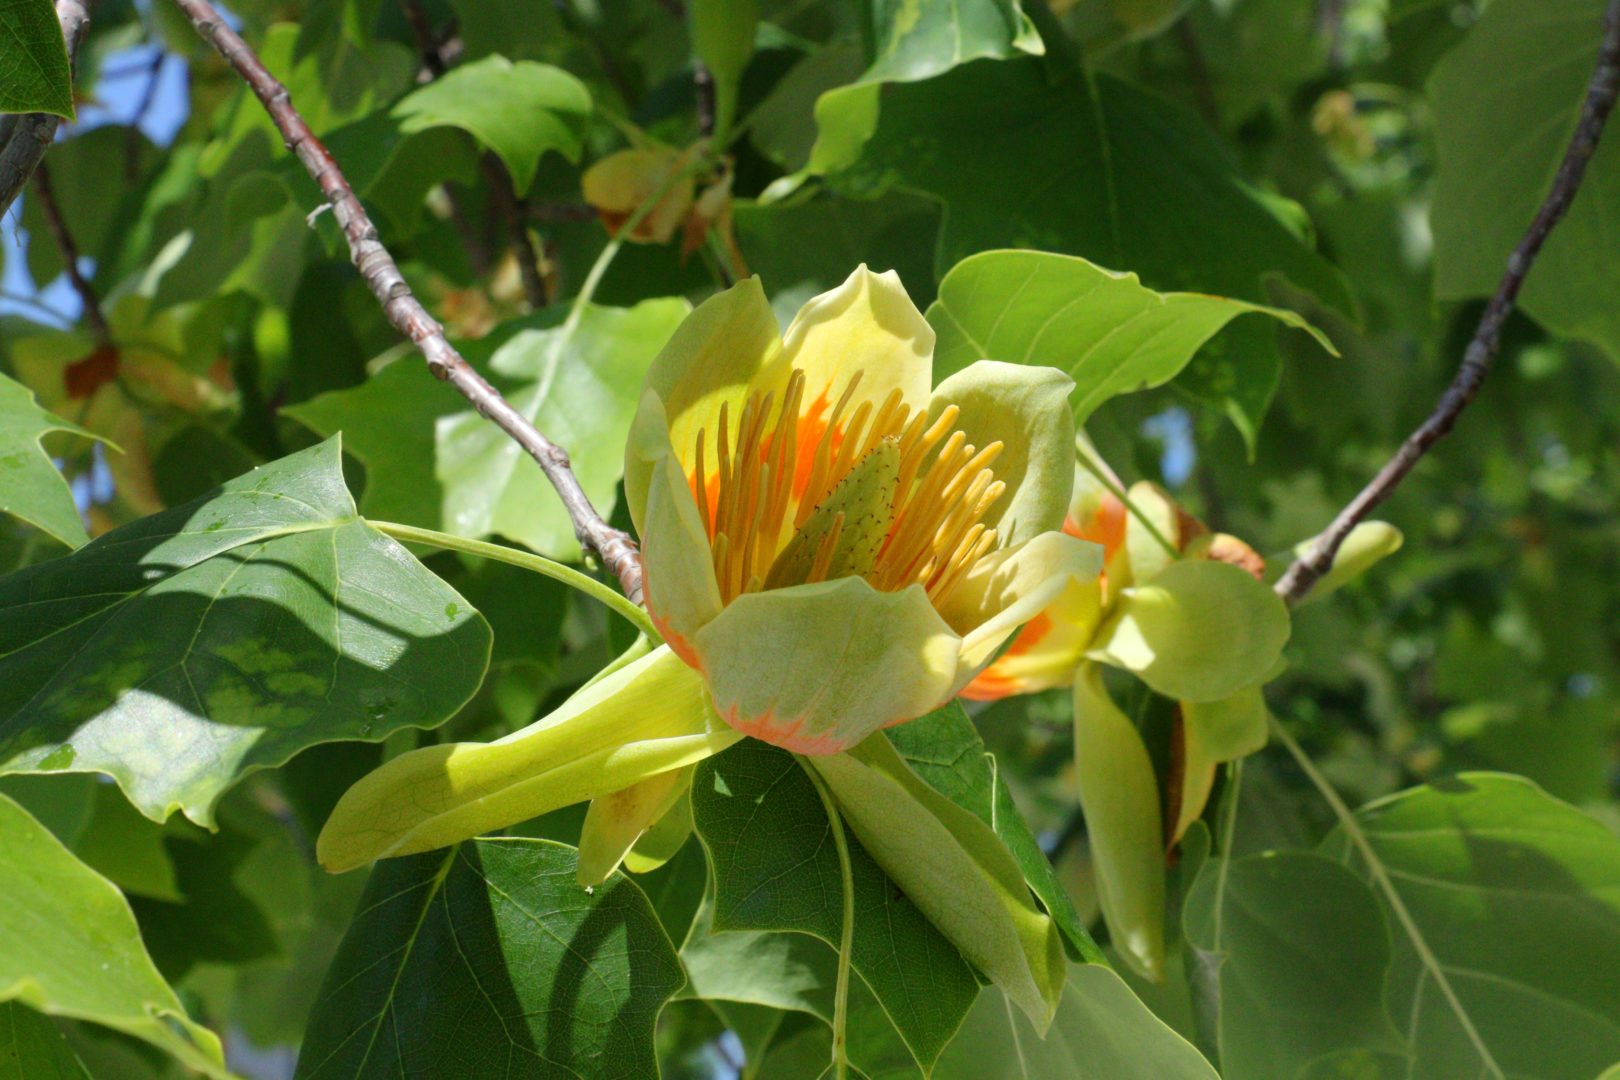 Дерево с цветками, как у лилии или тюльпана - леродендрон или тюльпановое дерево